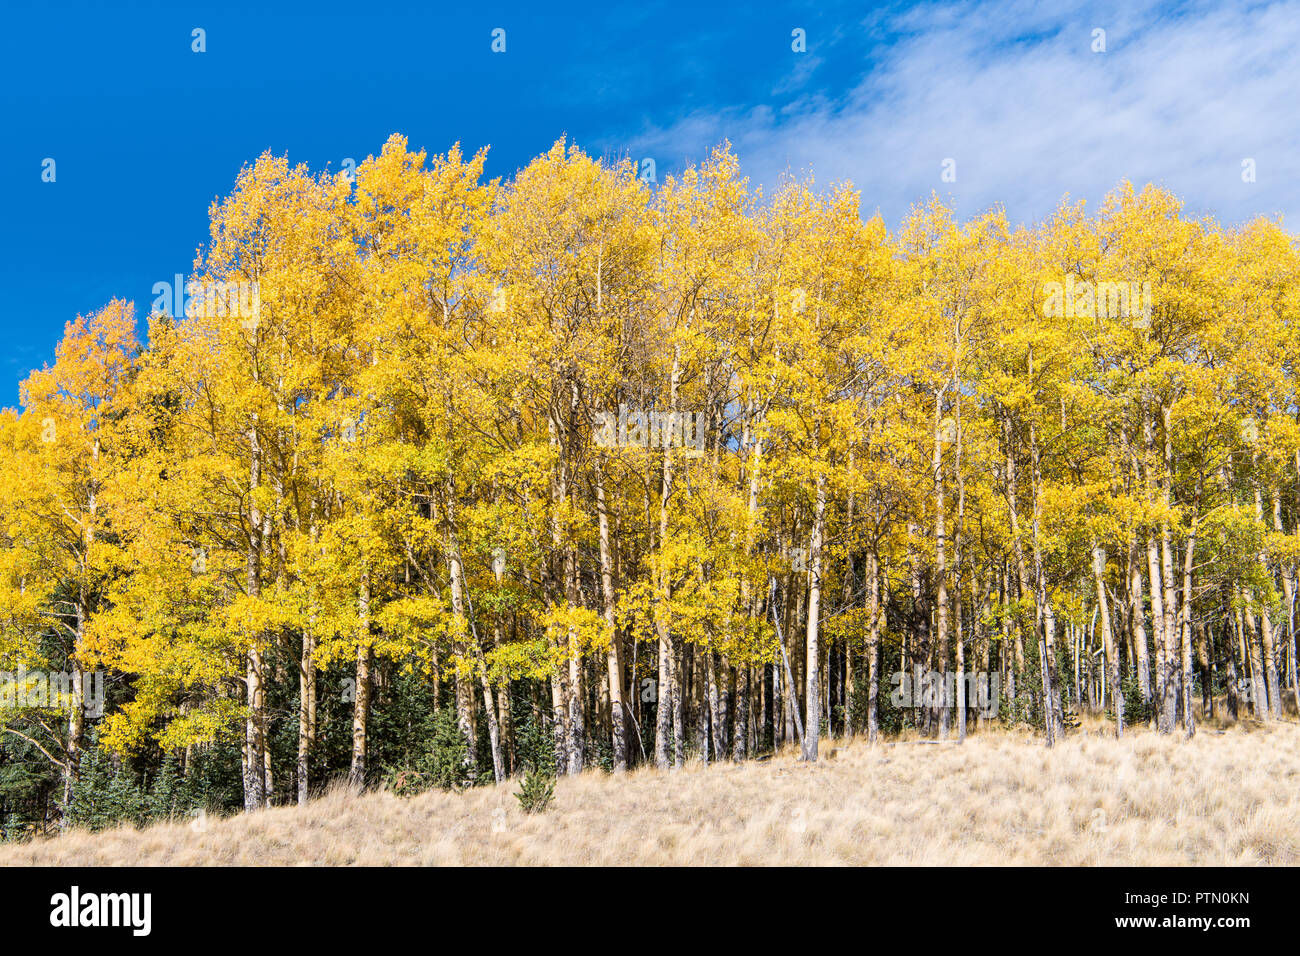 Ein stand von Aspen Bäume im Herbst Farben gold und Gelb entlang der Kante einer grünen Wiese Stockfoto